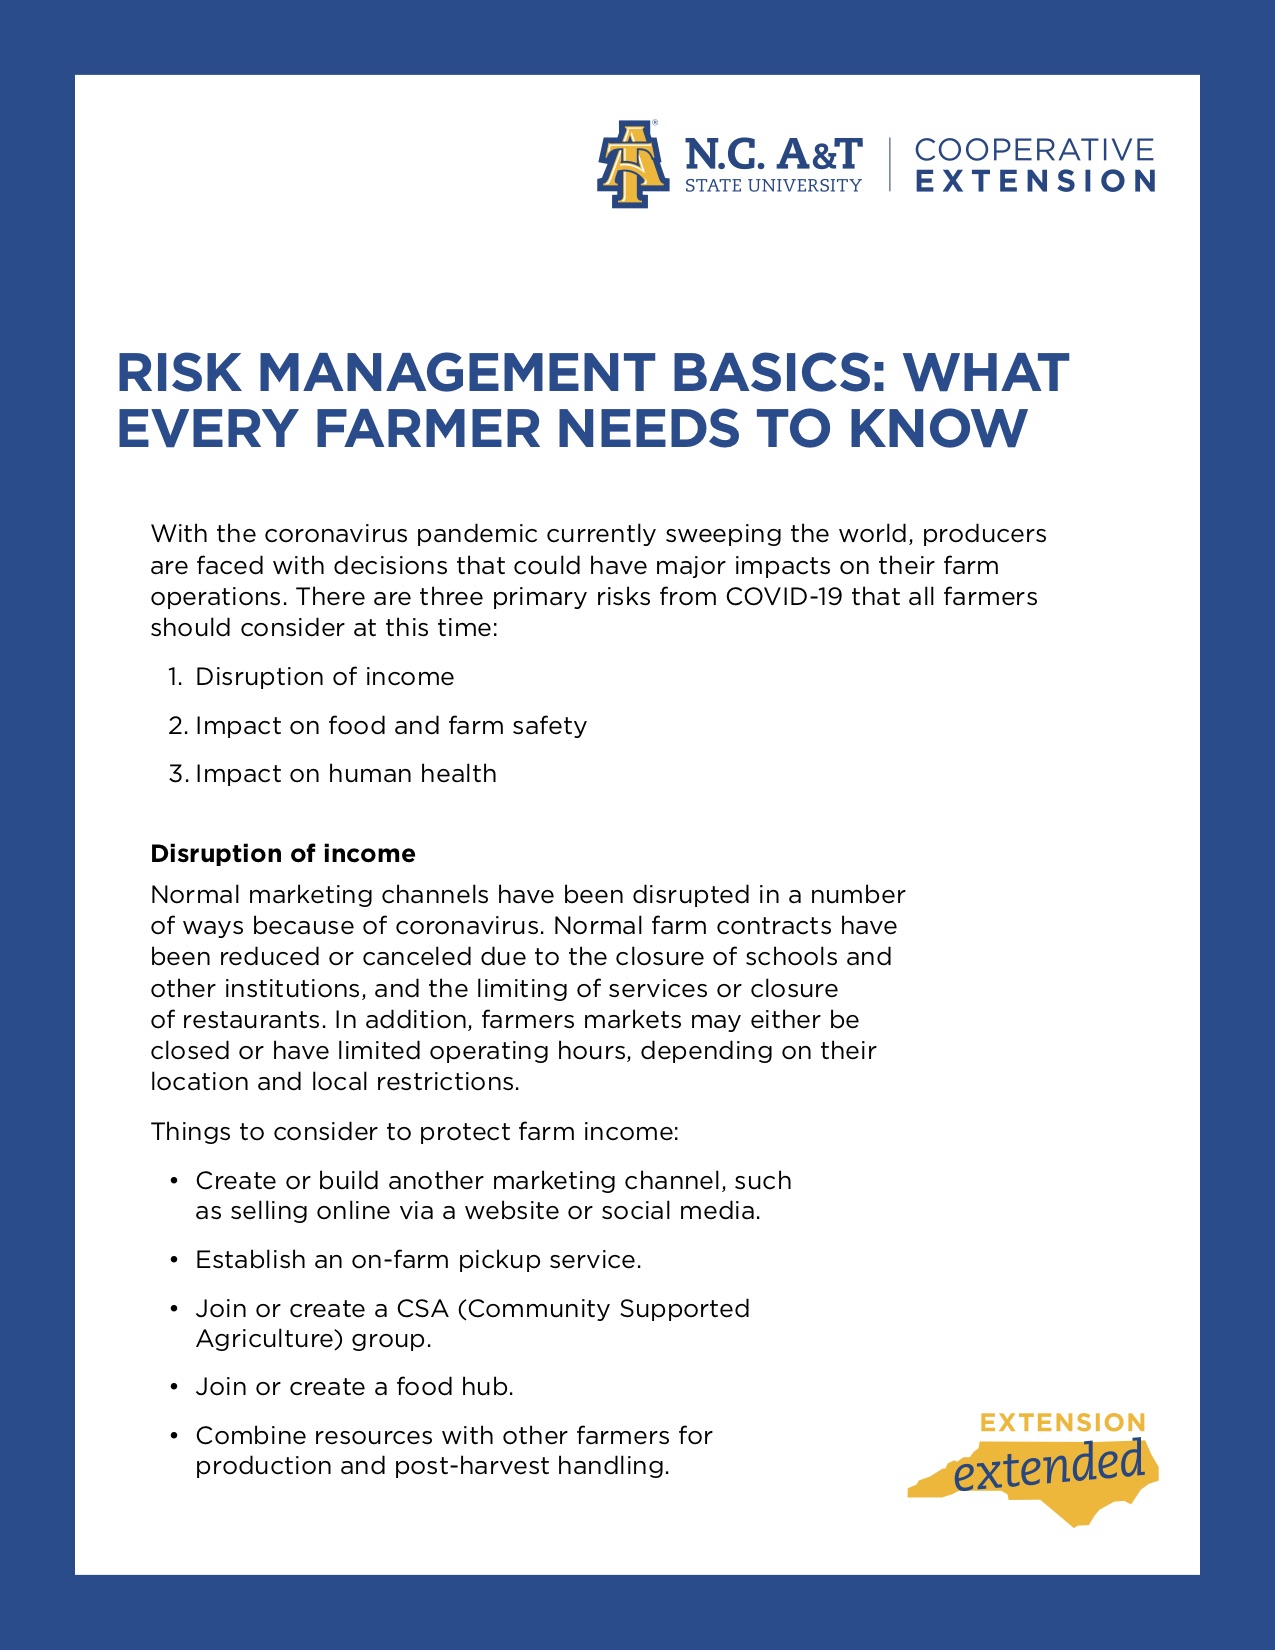 Risk management basics